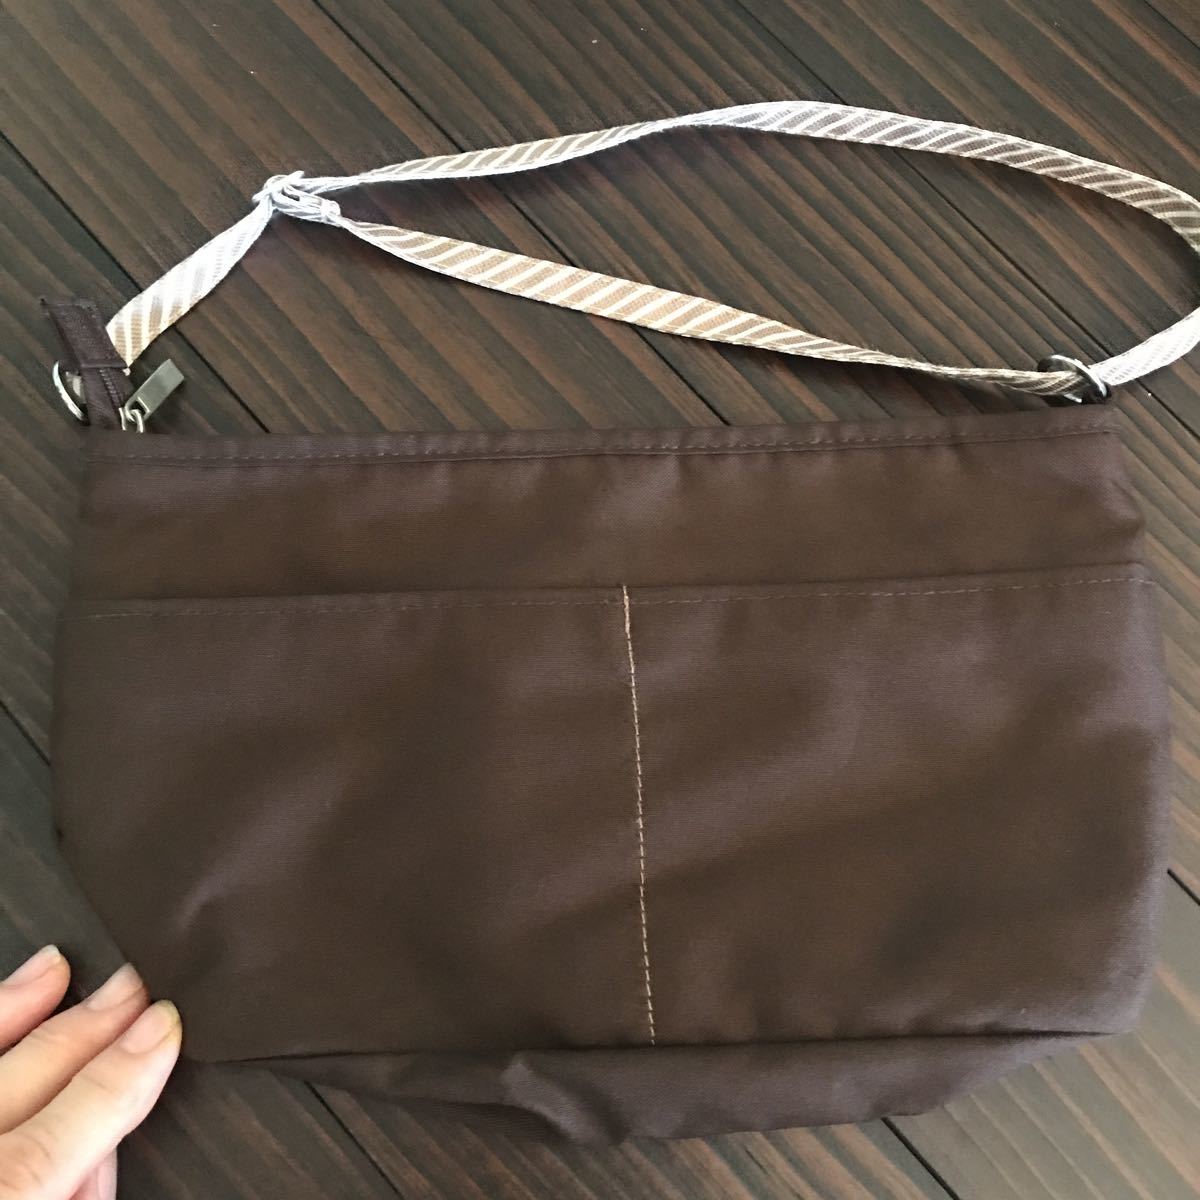  Fancl Novelty bag-in-bag organizer Brown 